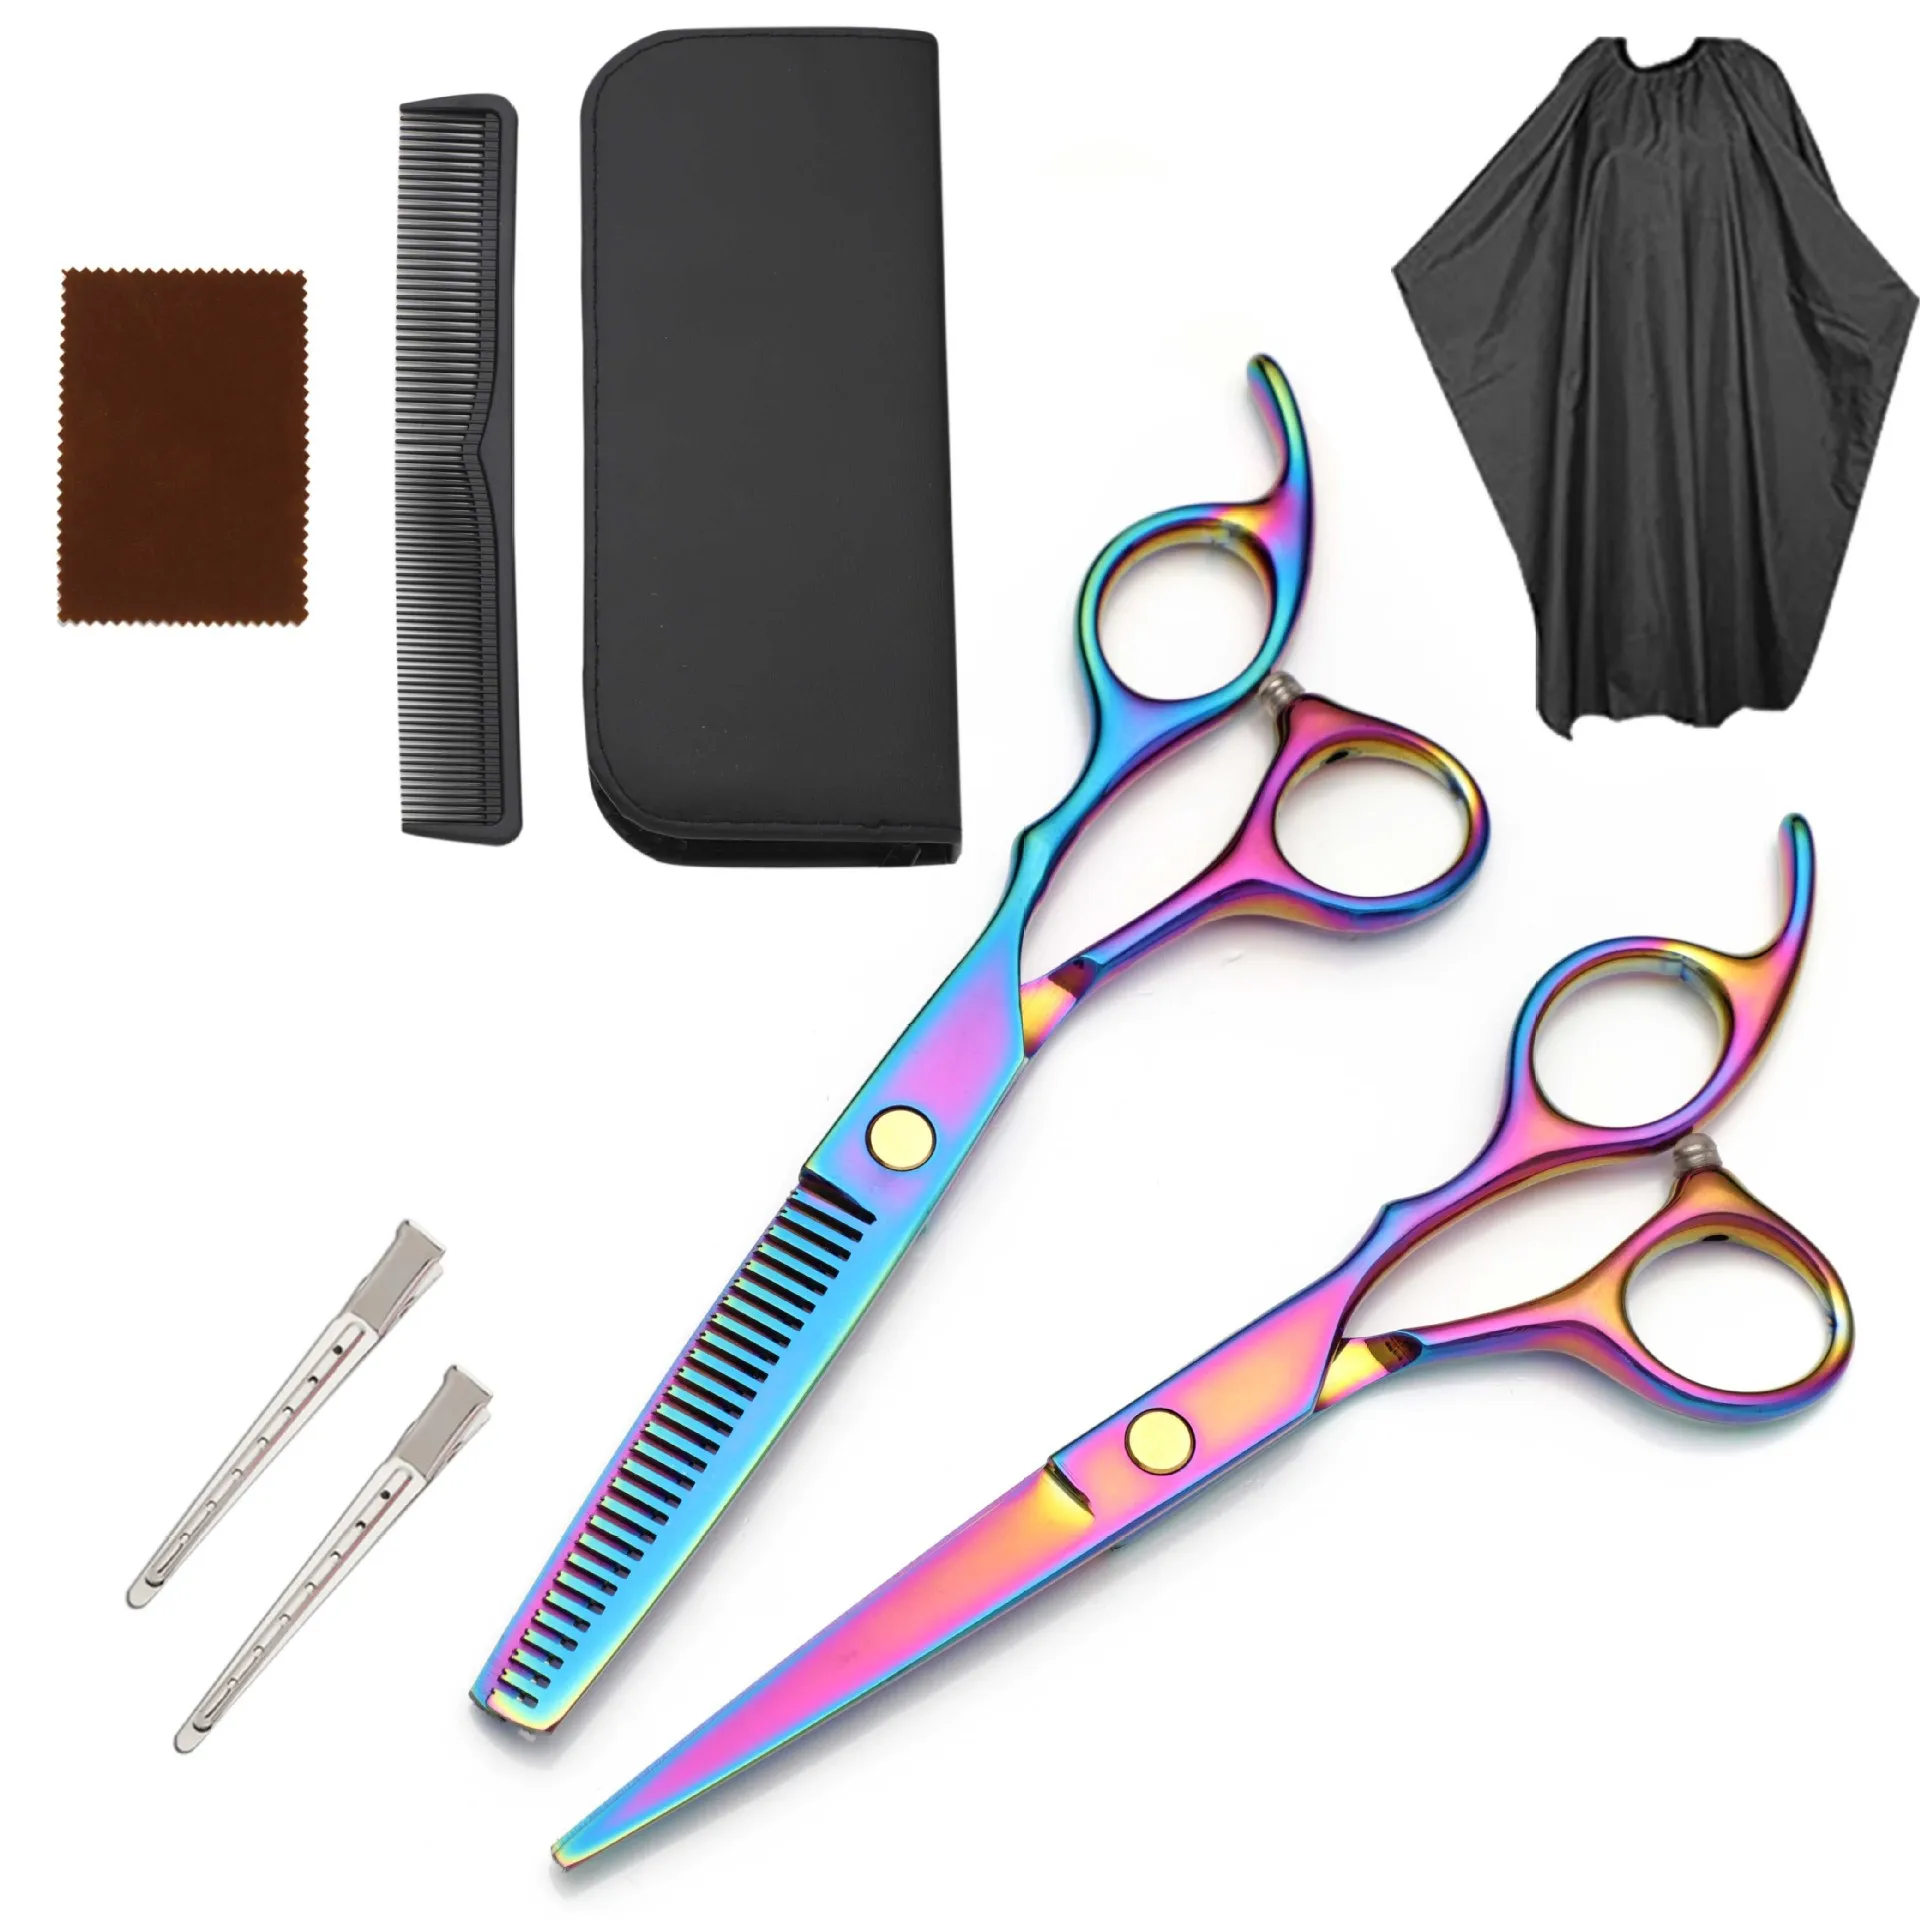 6 дюймовые профессиональные ножницы для волос, набор, филировочные Парикмахерские ножницы для стрижки волос, нержавеющая сталь, много цвето...